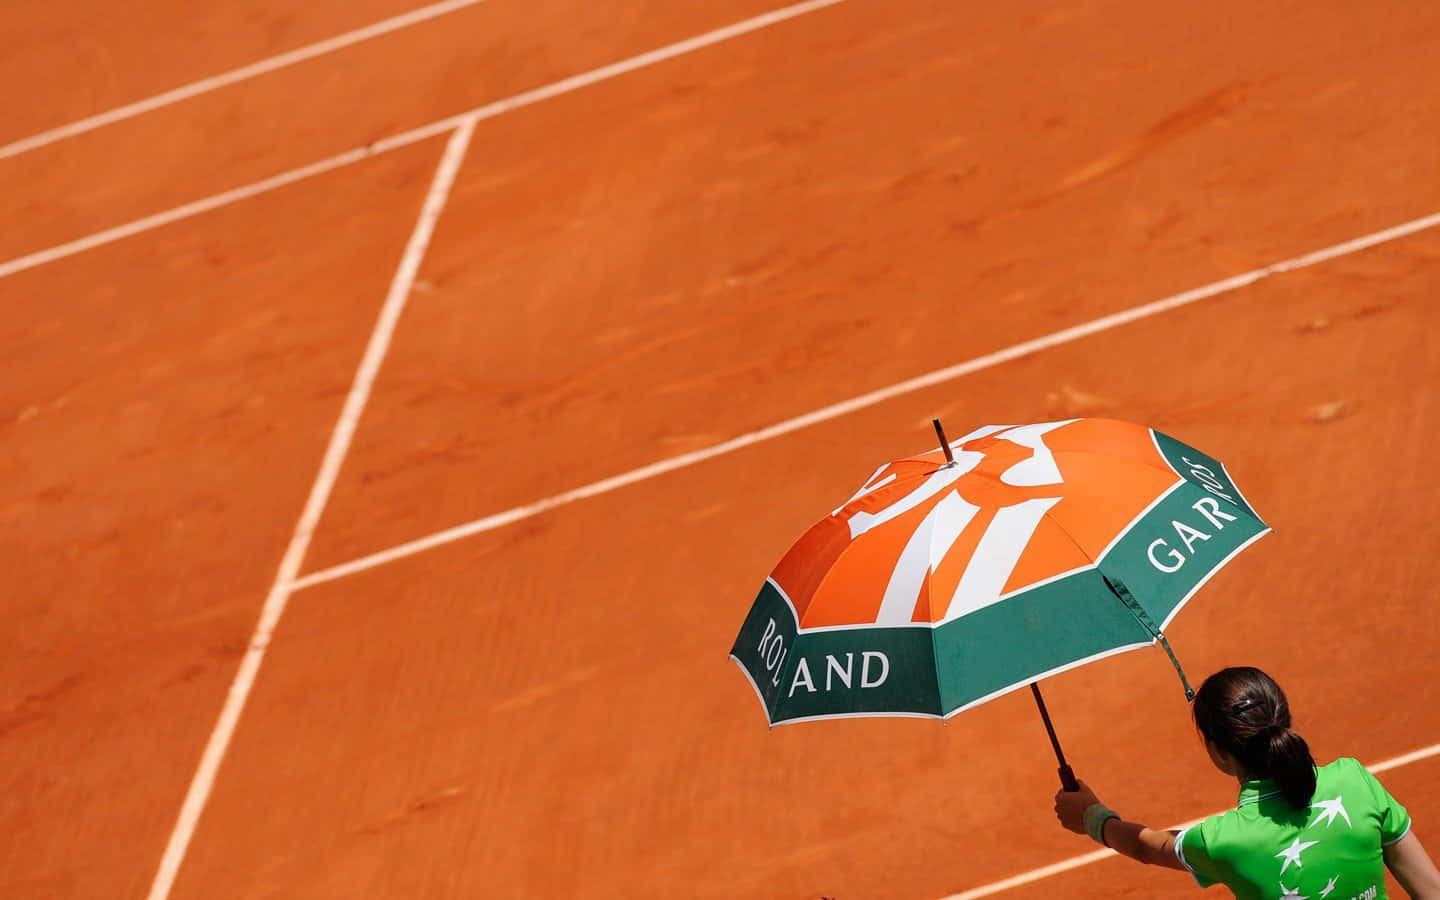 Enkvinna Som Håller En Paraply På En Tennisbana